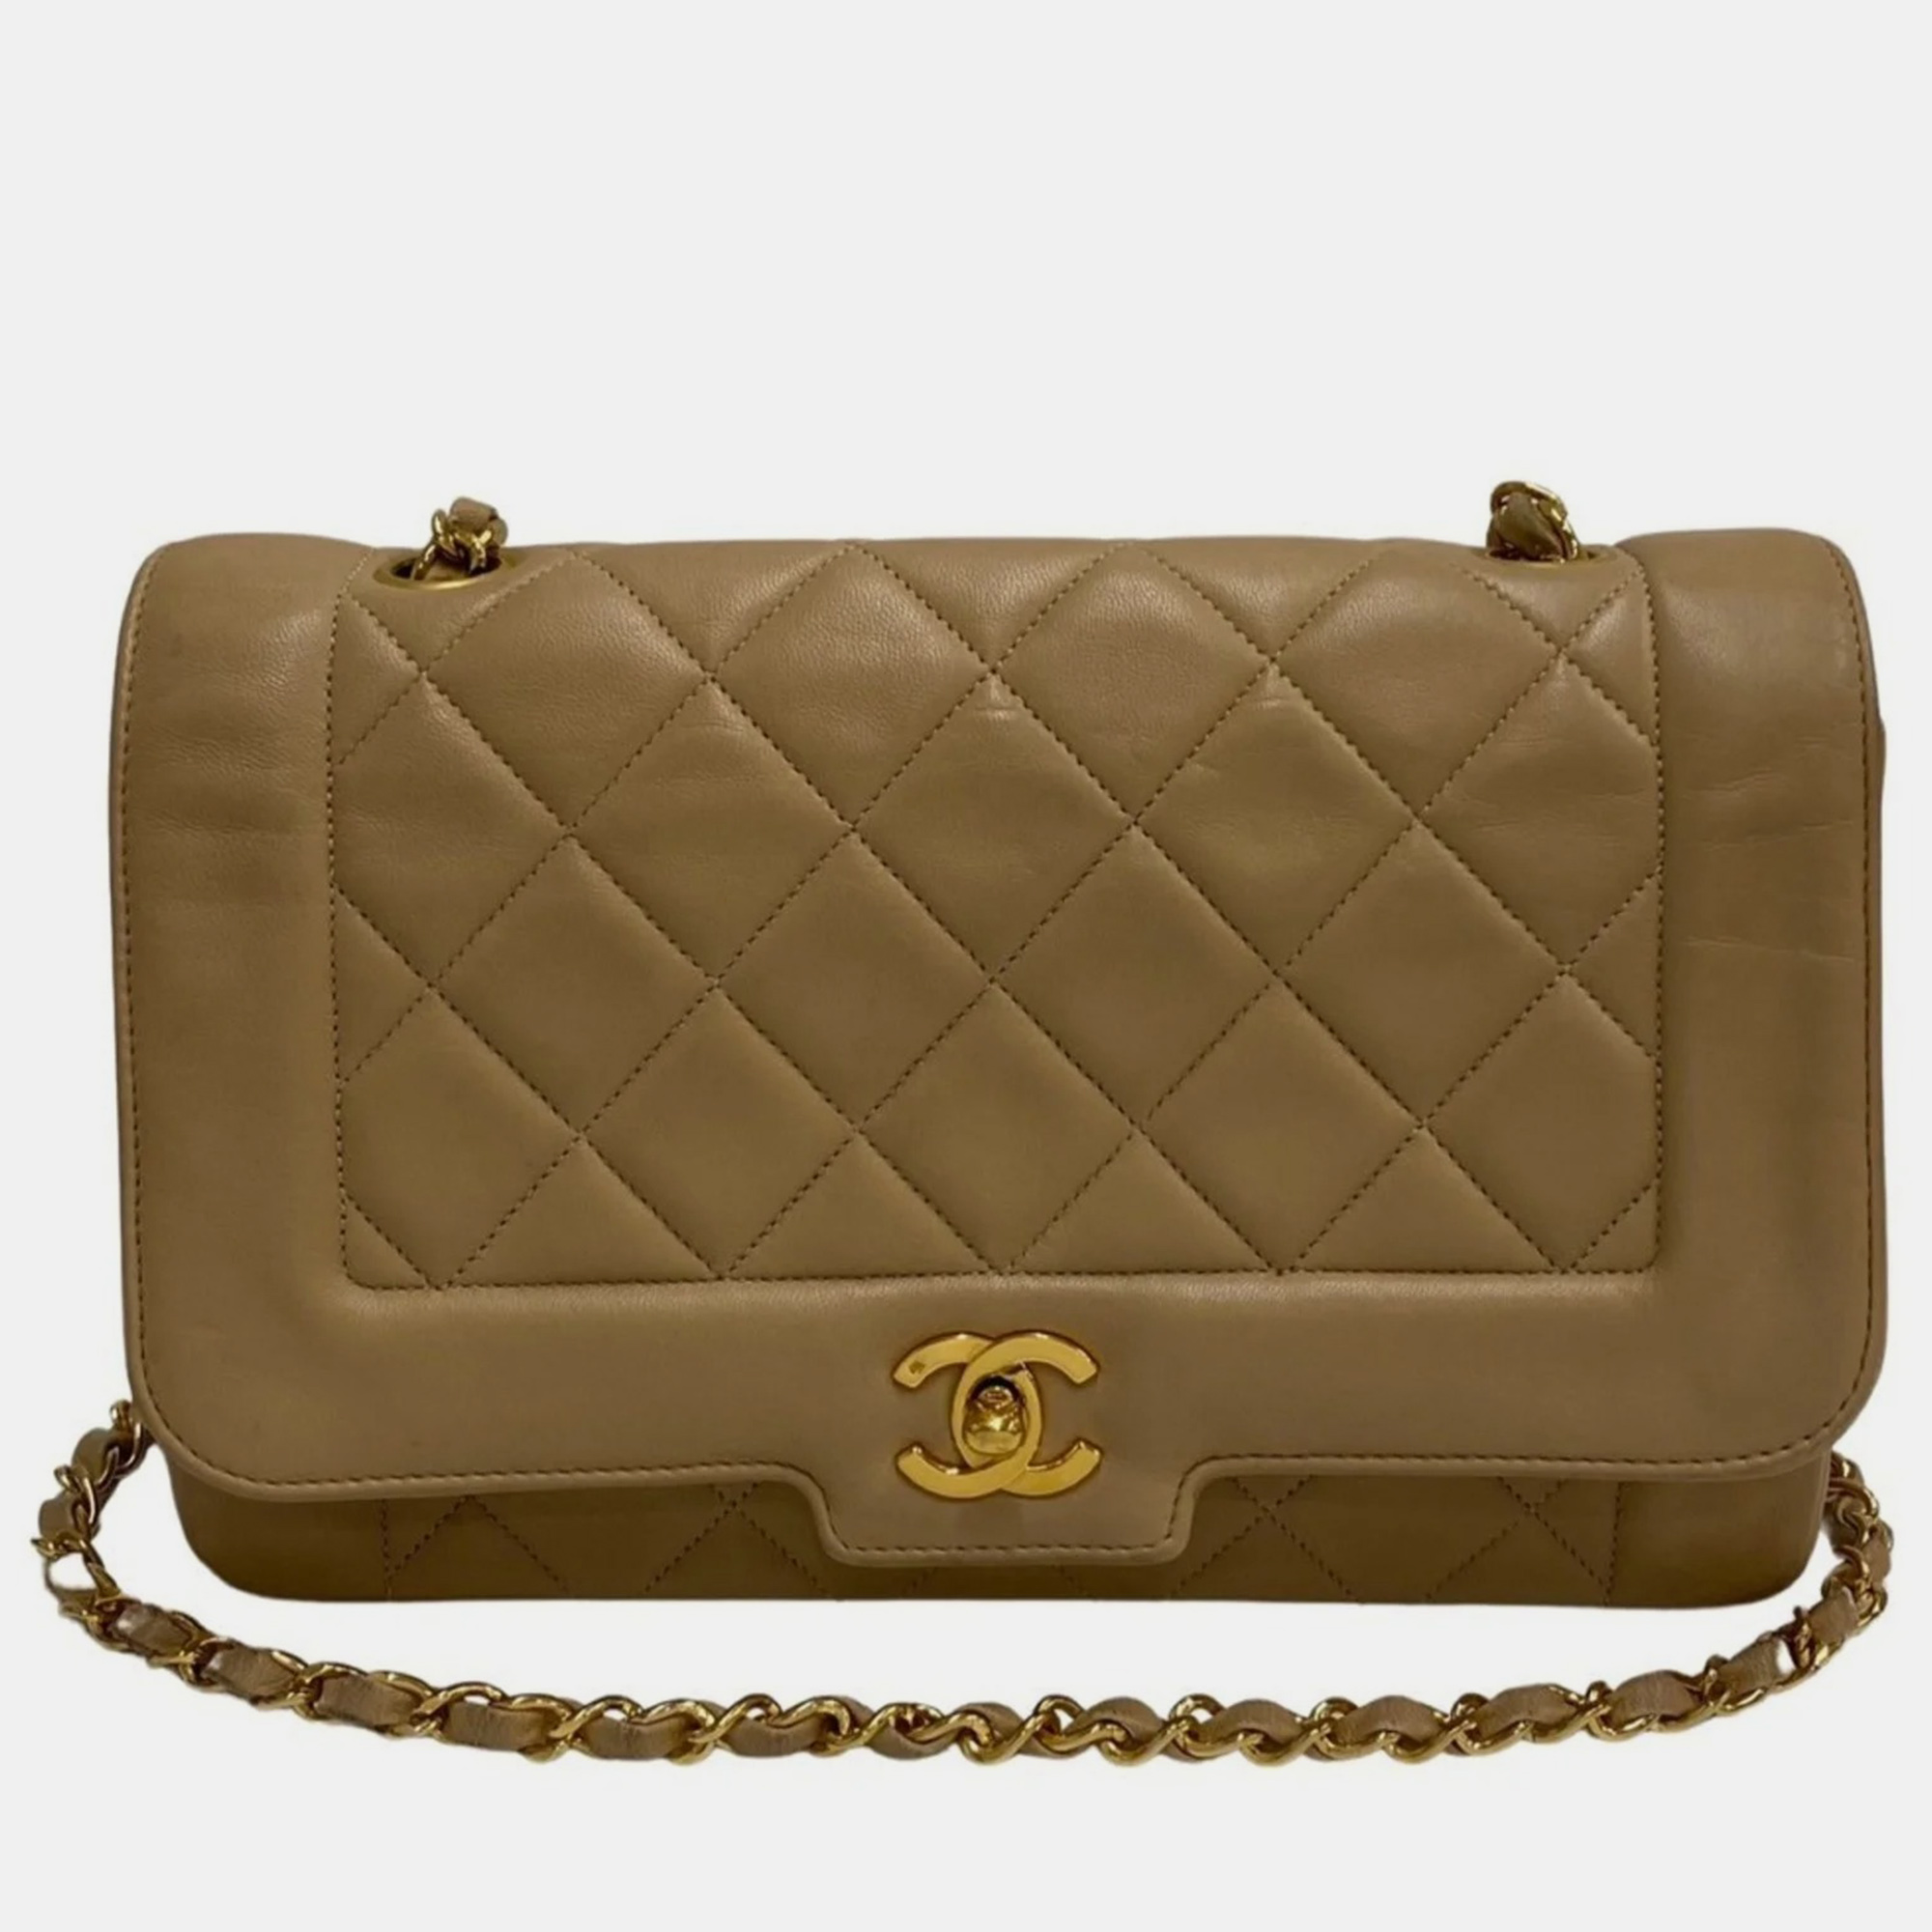 Chanel beige leather vintage diana shoulder bag